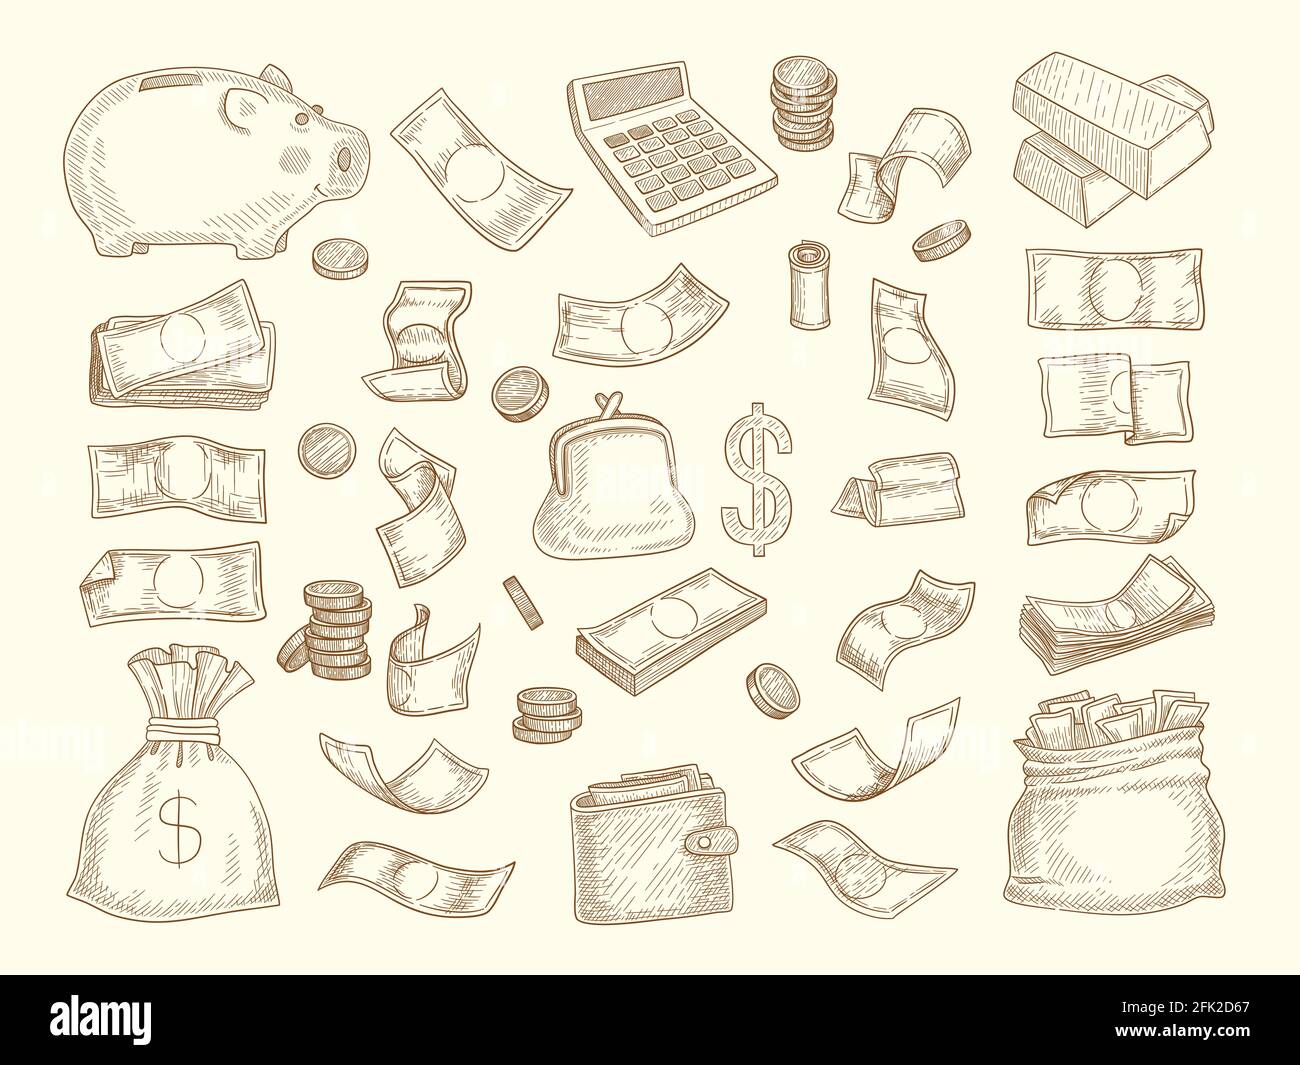 Finanzkritzel. Geld und Geschäftselemente Corporate Objects Münzen Dollar Charts Geldbox Vektor-Illustrationen Stock Vektor